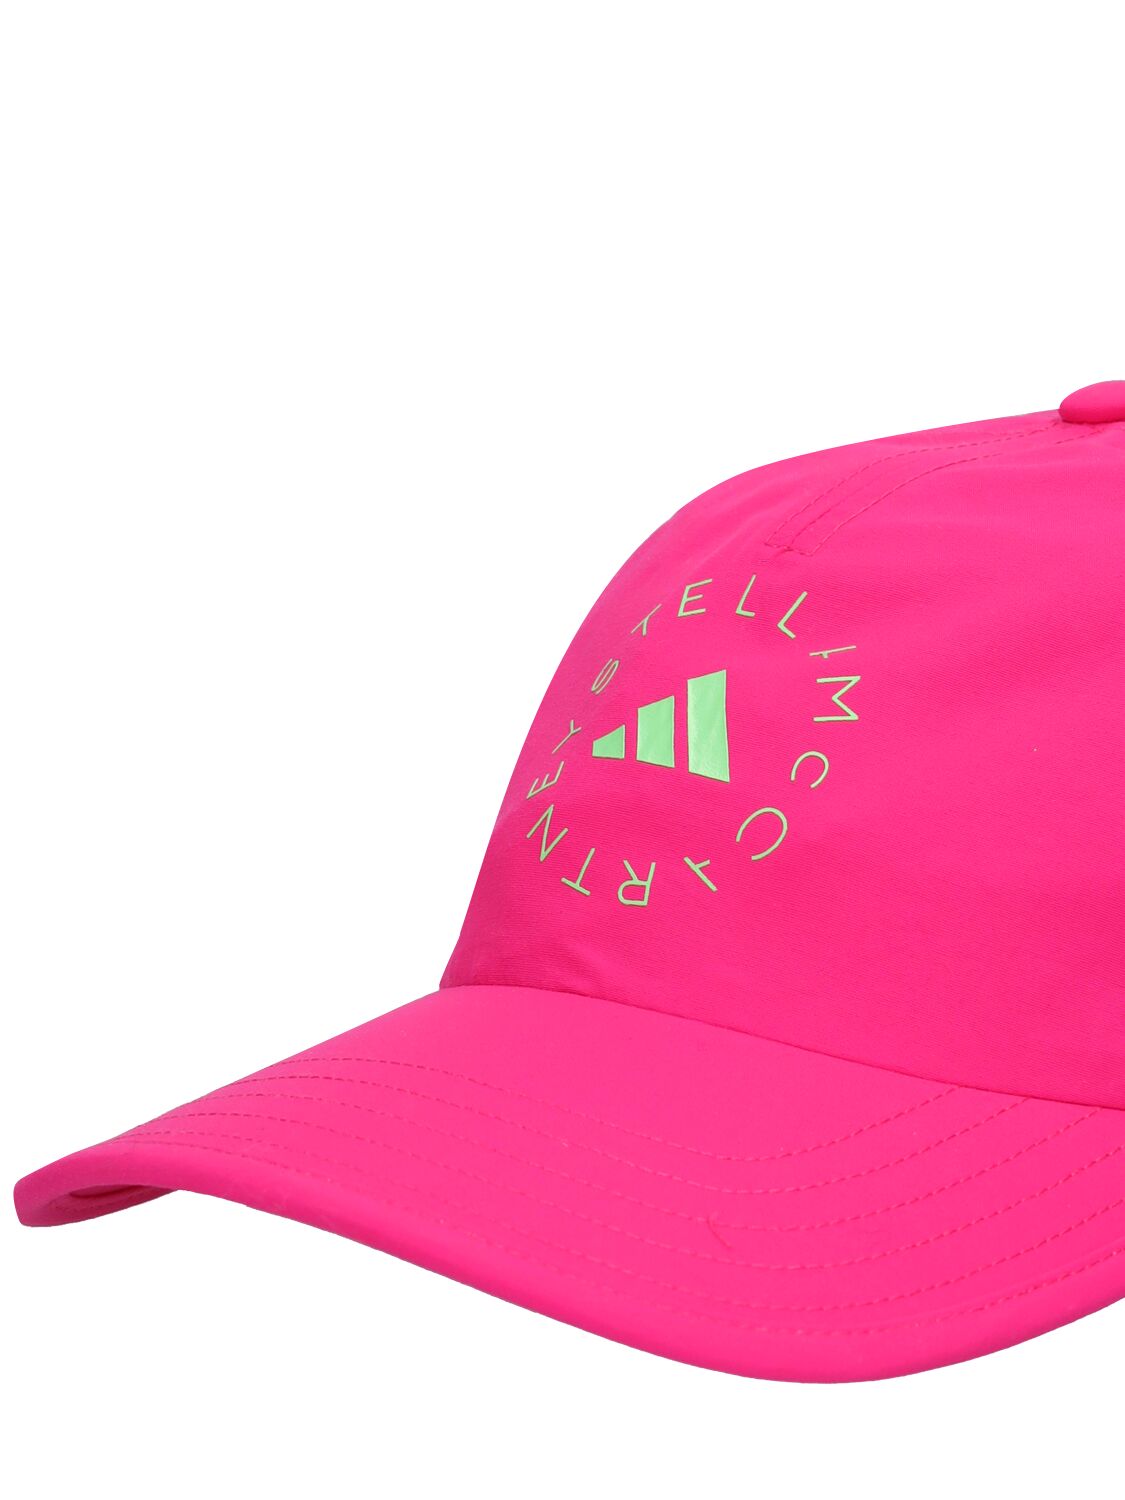 Shop Adidas By Stella Mccartney Asmc Baseball Cap W/ Logo In Fuchsia